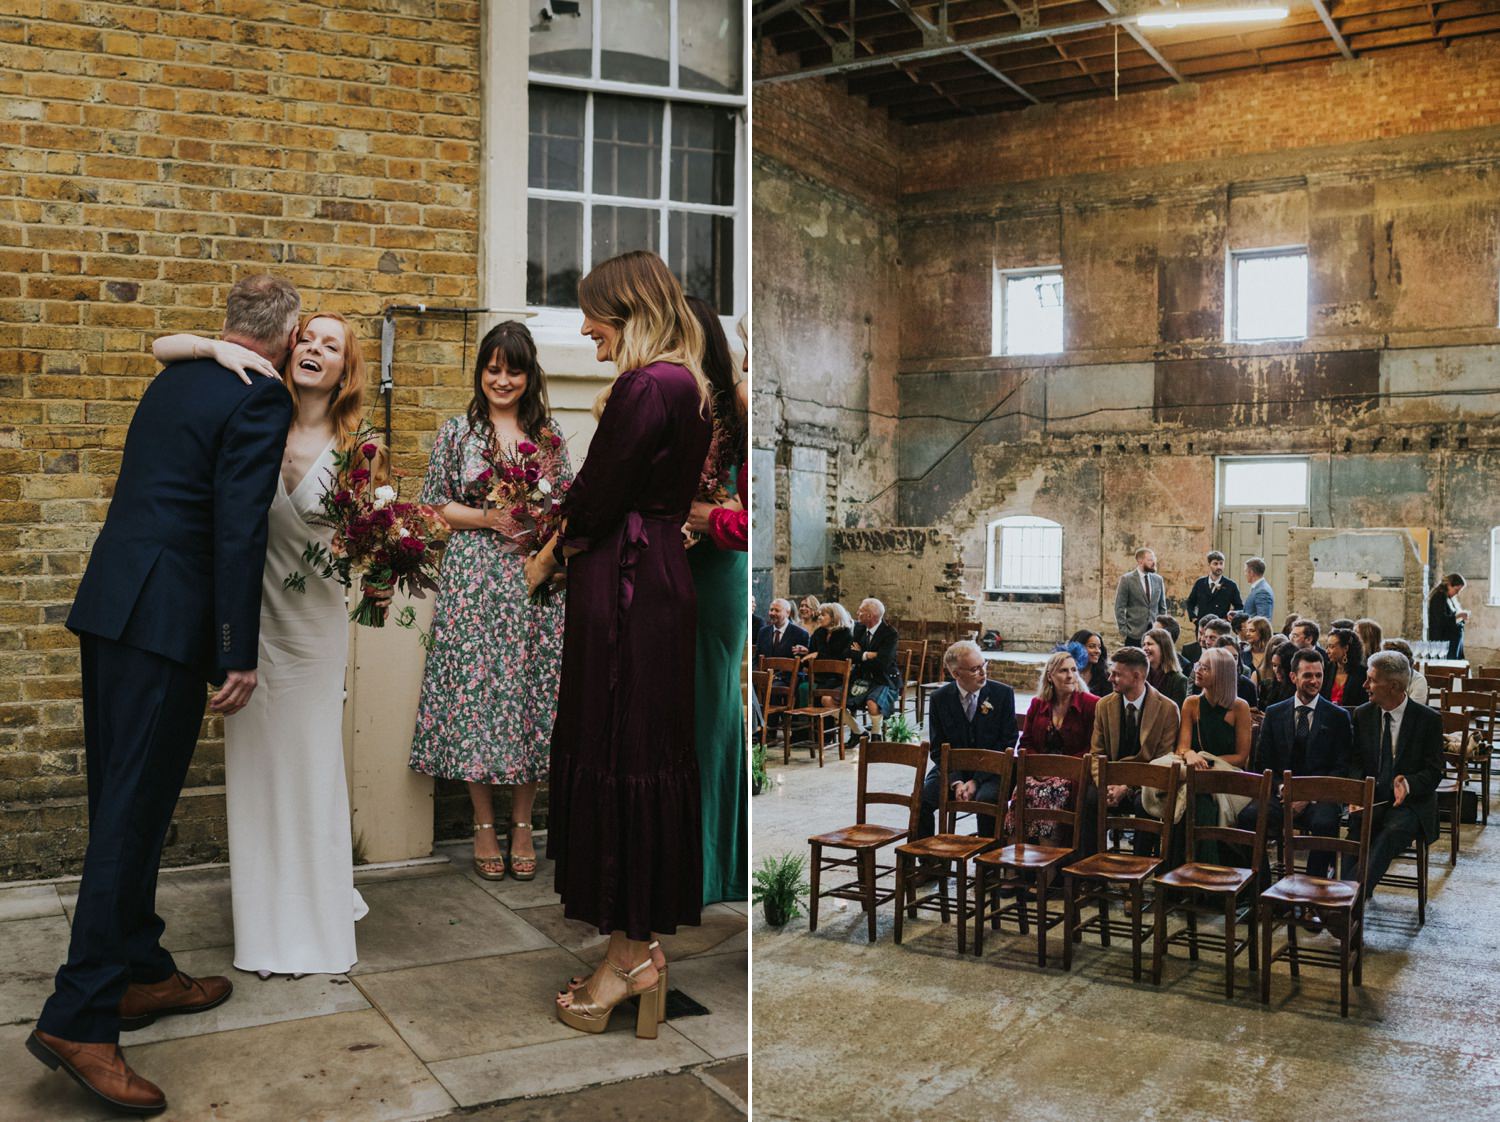 Guests arrive at wedding chapel